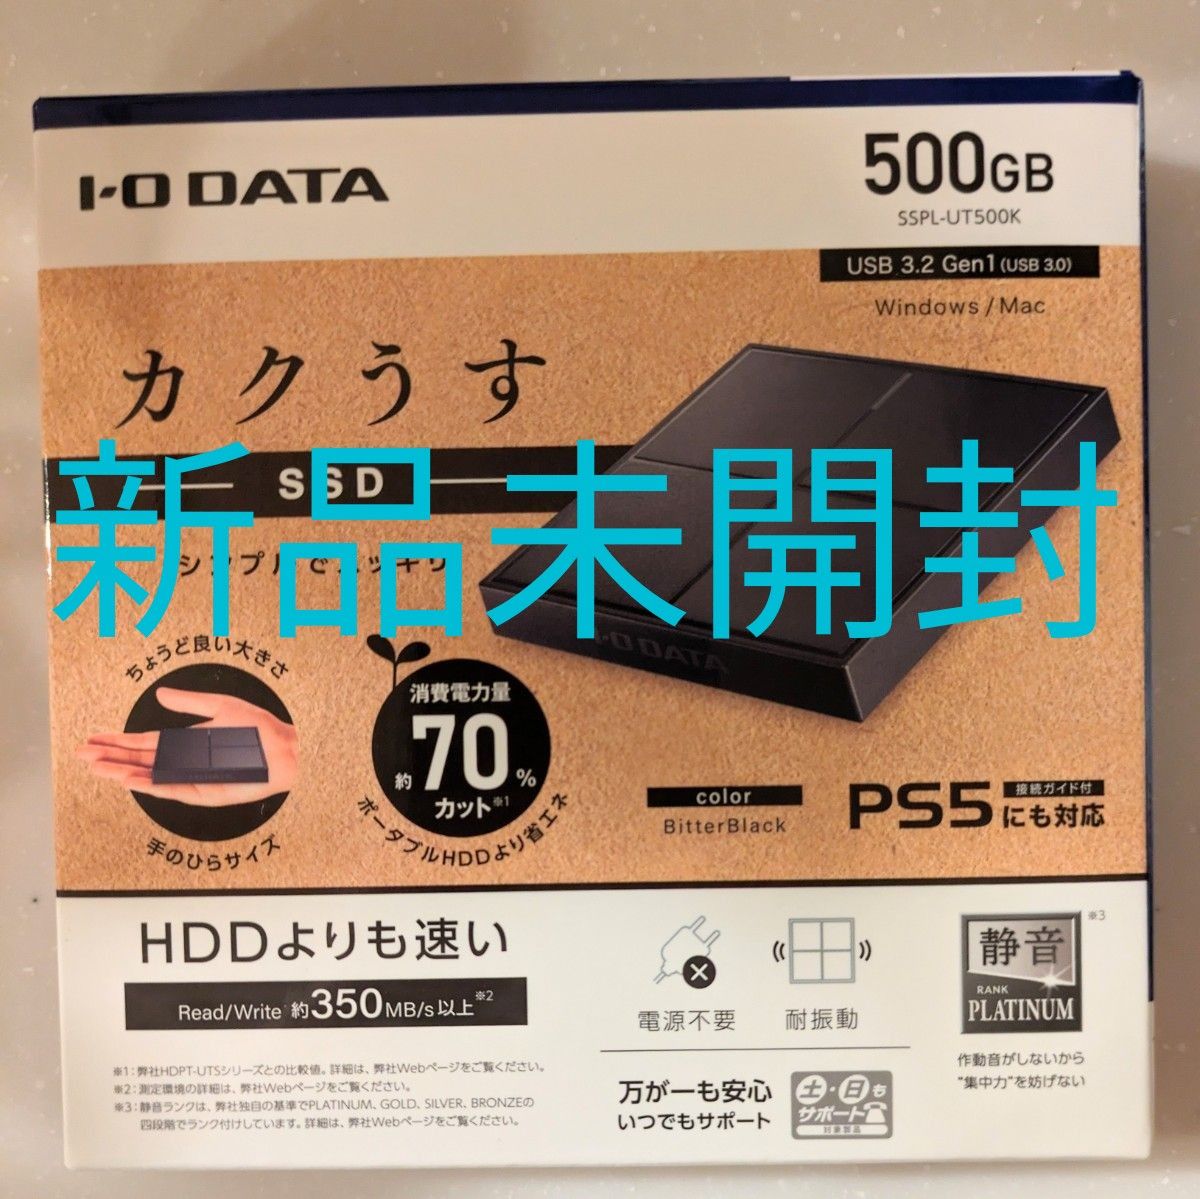 アイ・オー・データI・O DATA 500GB外付けSSD SSPL-UT500K新品未開封